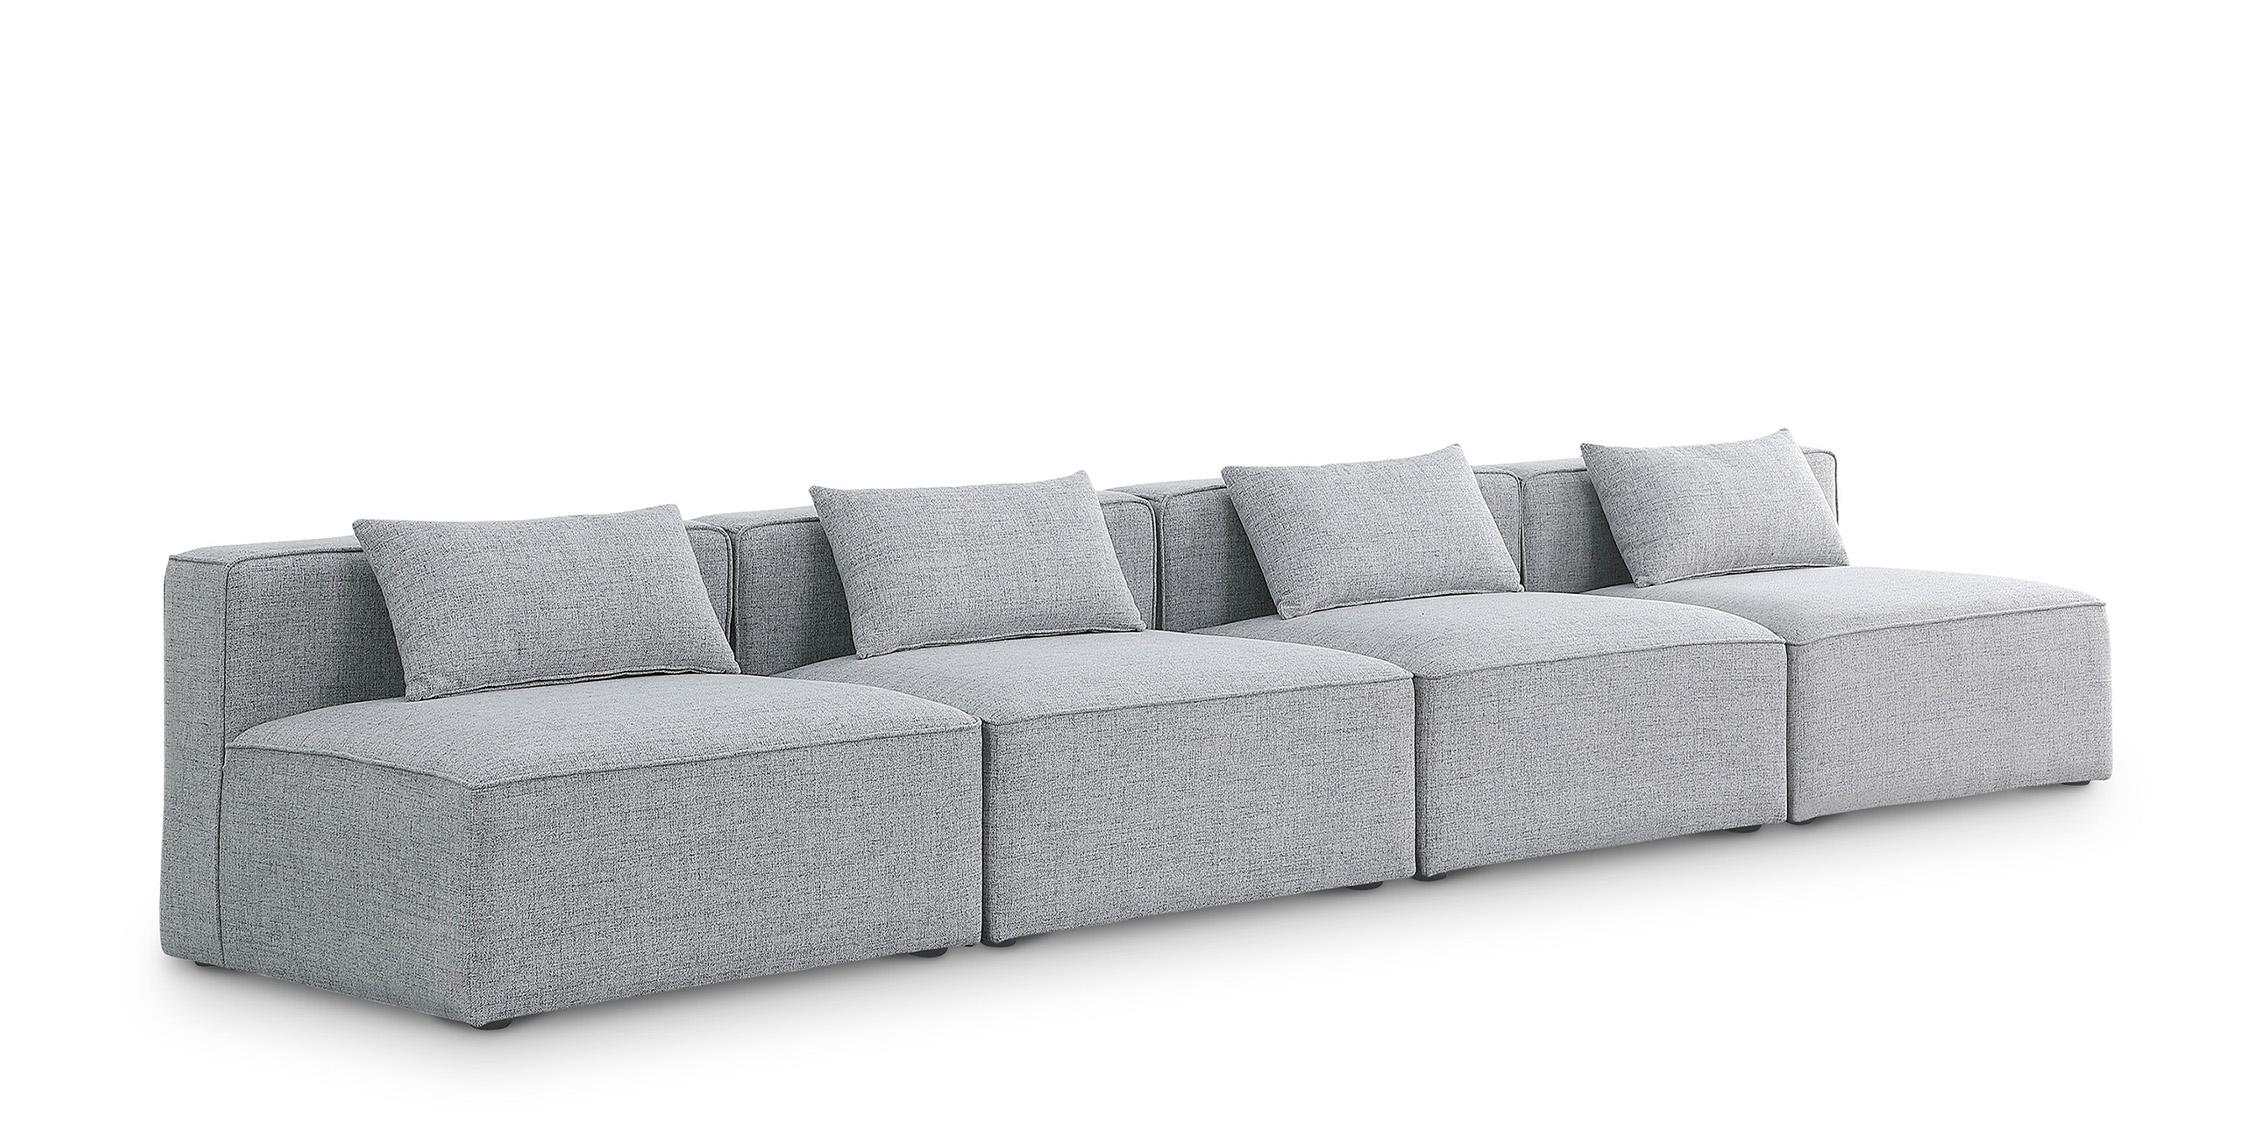 Contemporary, Modern Modular Sofa CUBE 630Grey-S144A 630Grey-S144A in Gray Linen